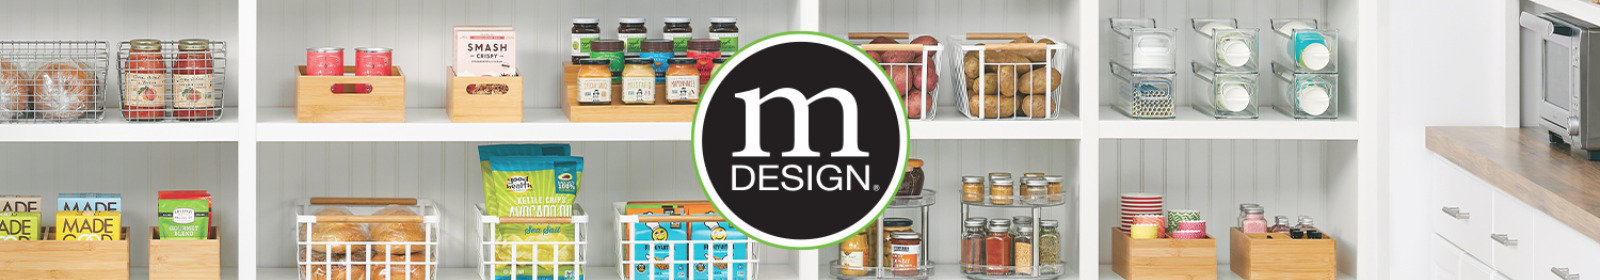 mDesign Plastic 3 Drawer Kitchen Storage Organizer Box, 4 Pack, Clear/Soft  Brass